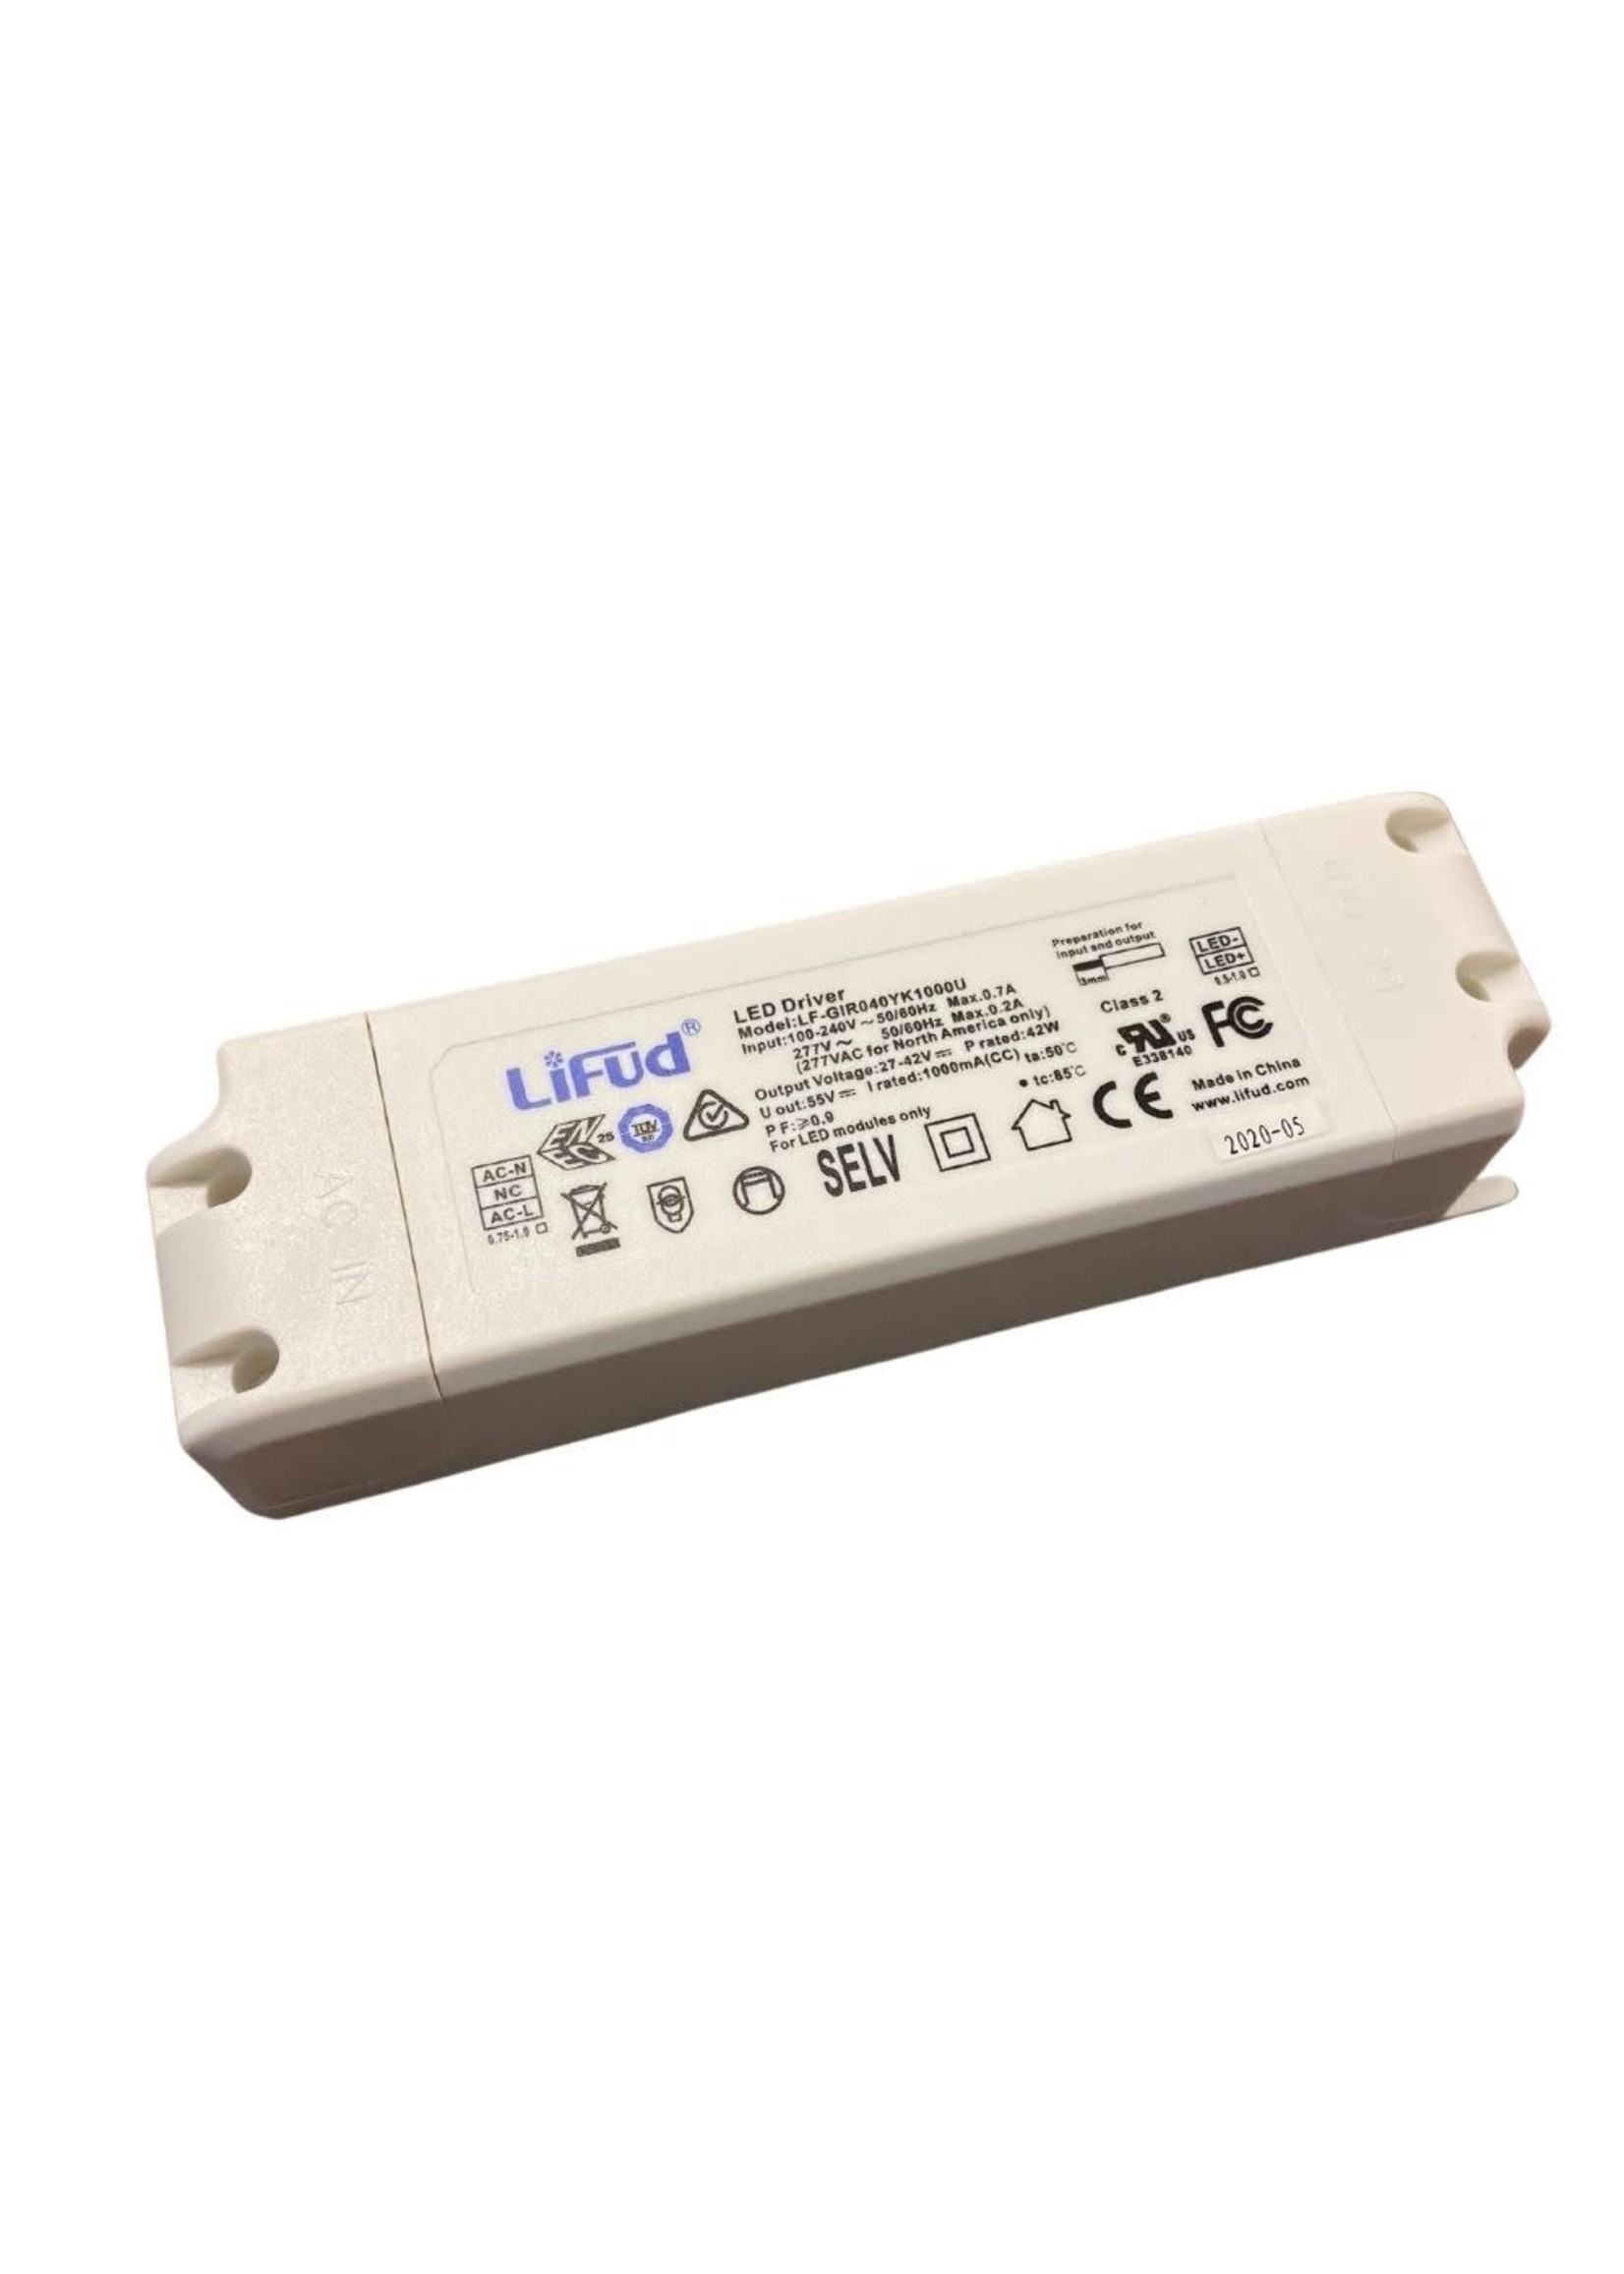 LIFUD LED DRIVER 100-277V (LF-GIR040YK1000U)